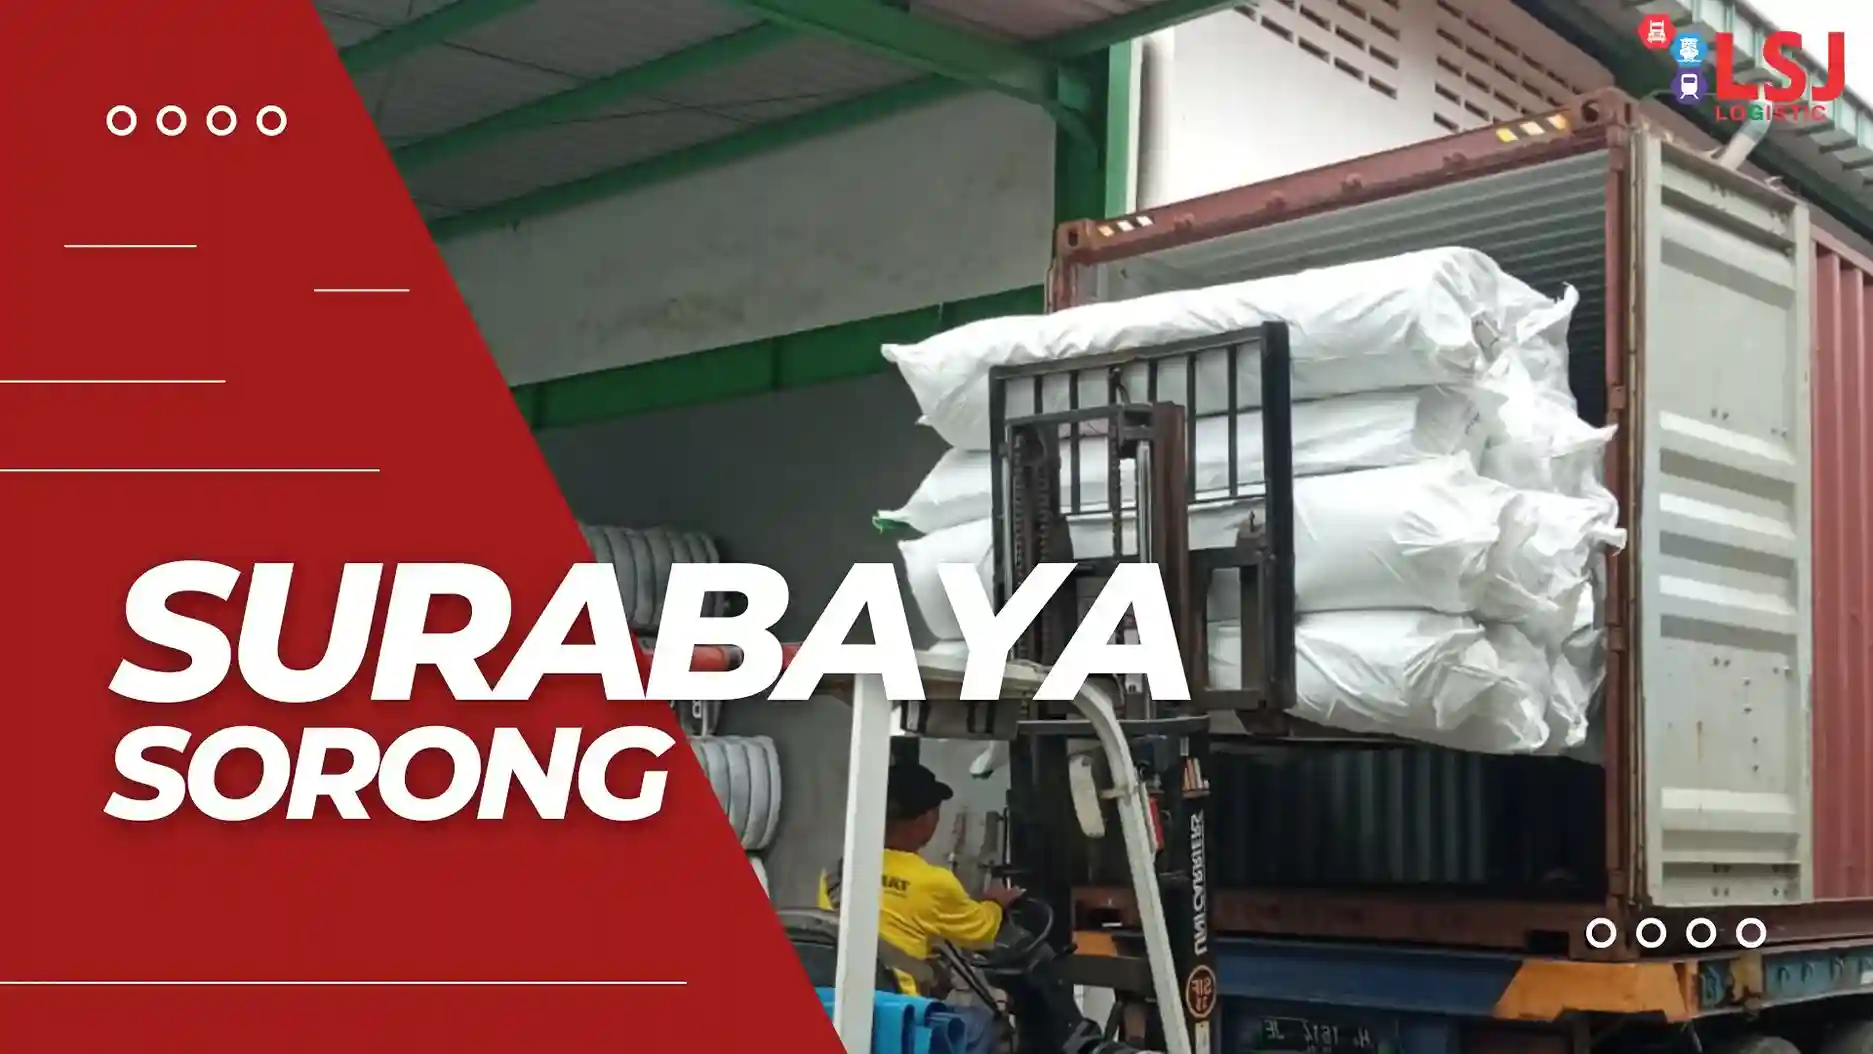 Ongkos Kirim Container Surabaya Sorong